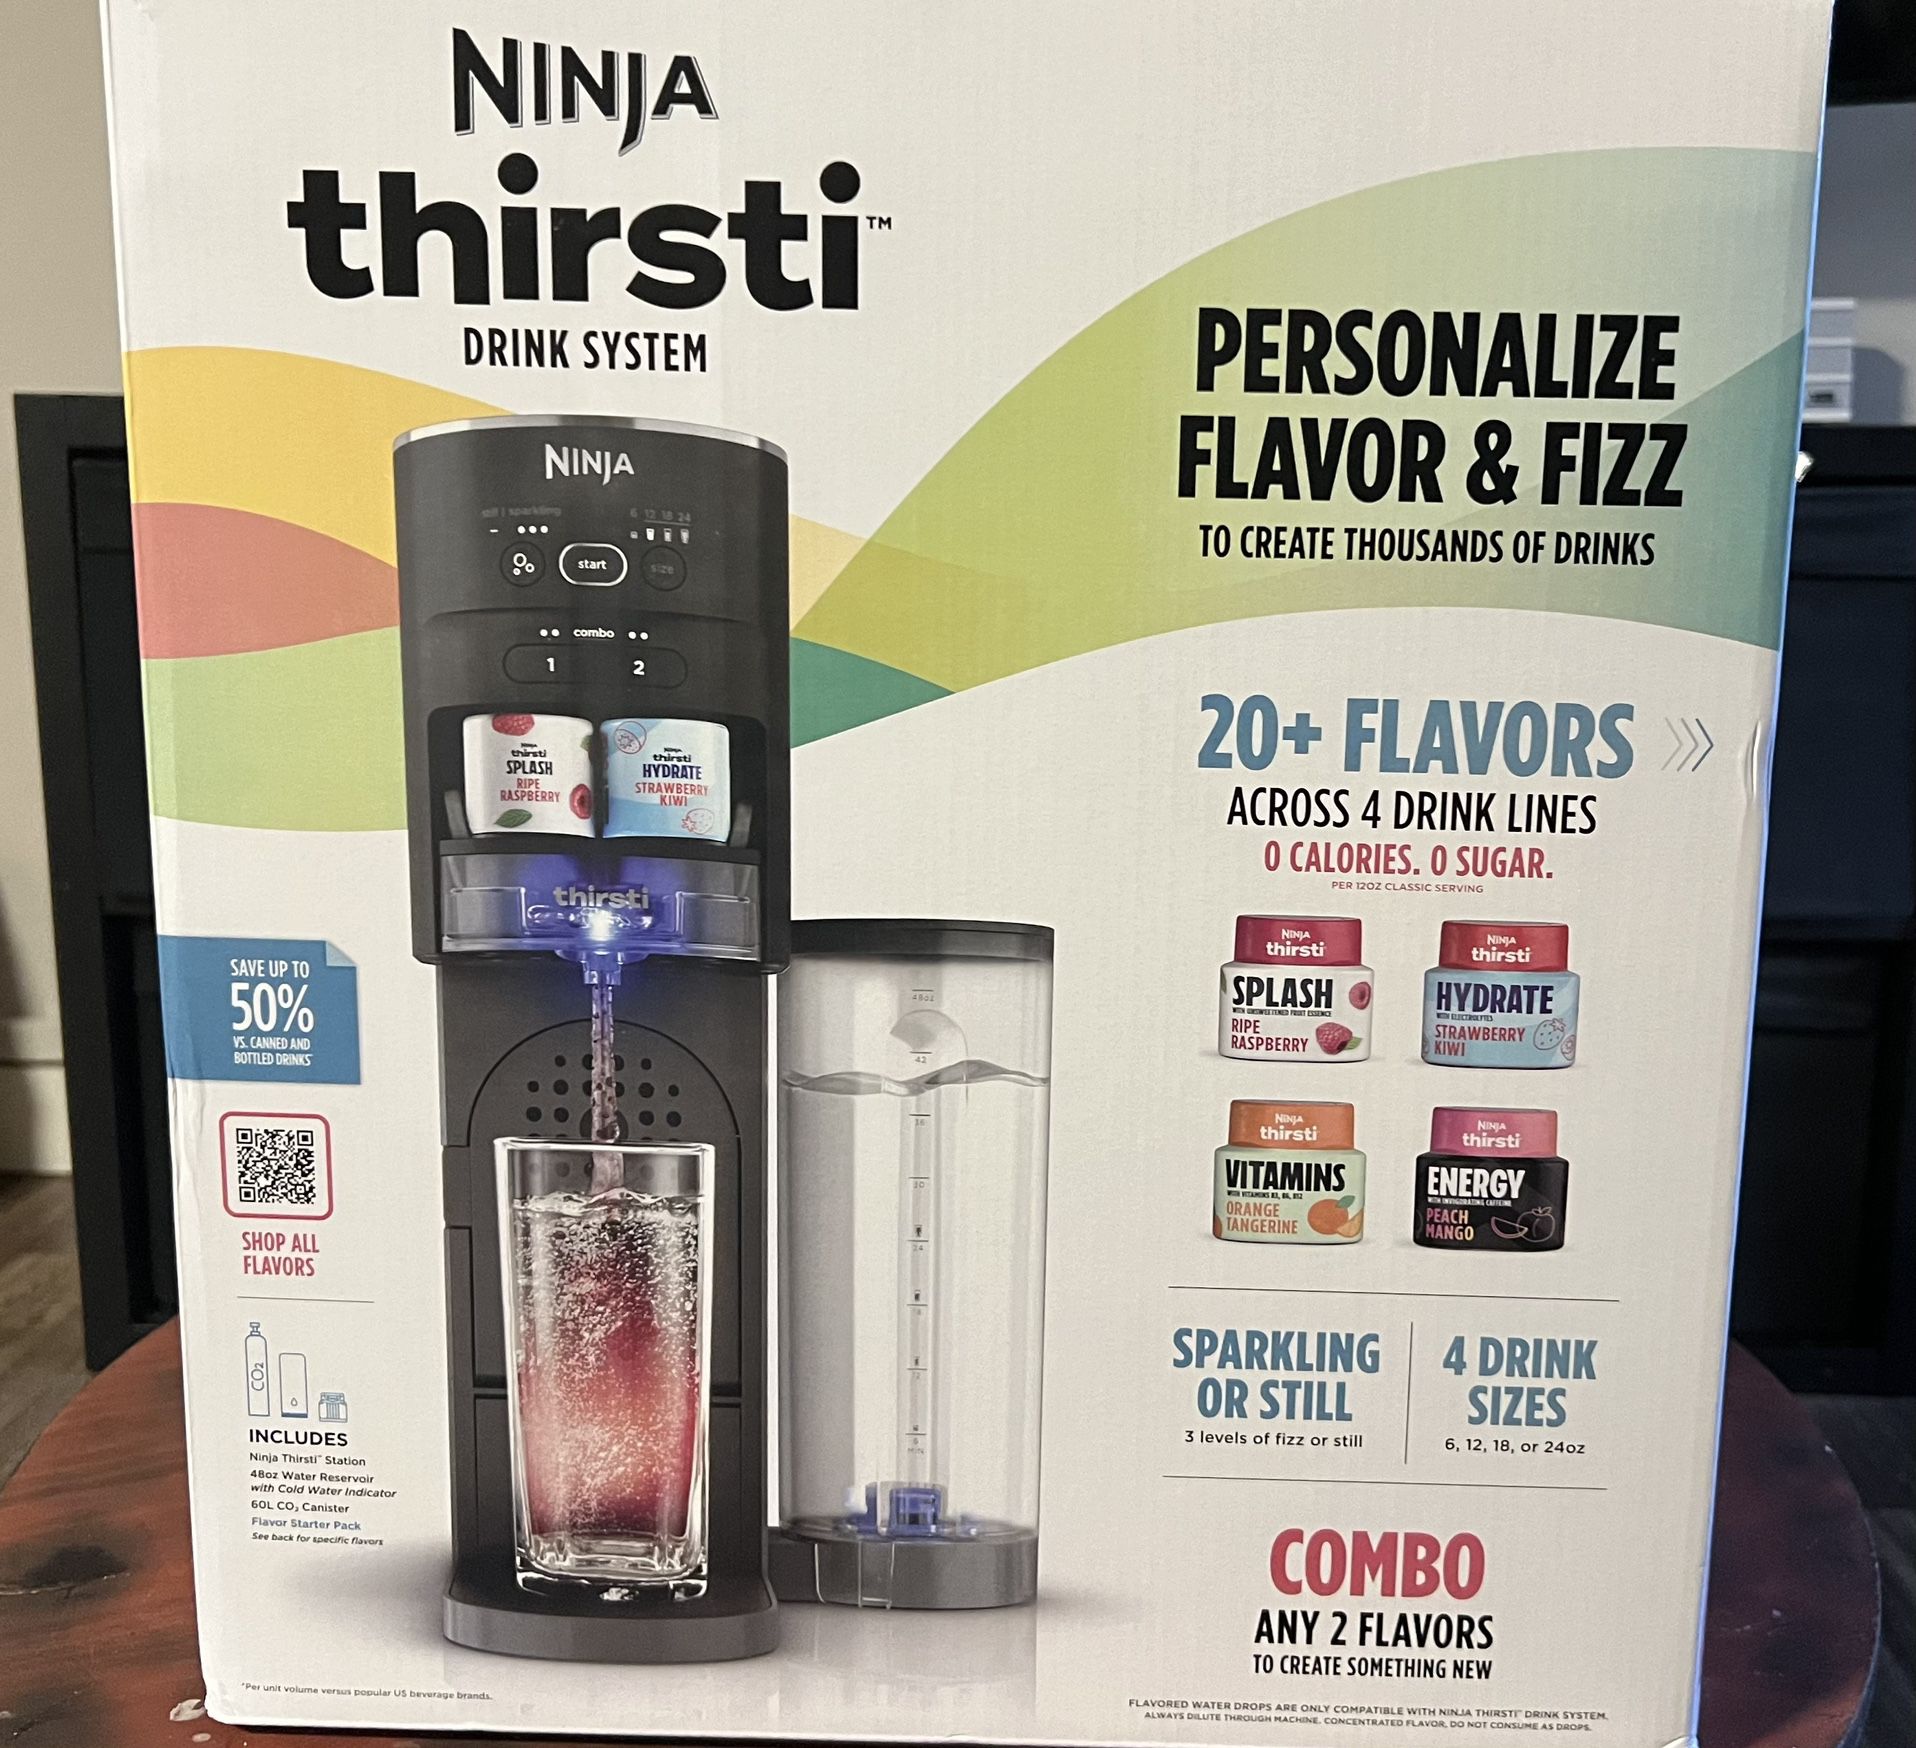 Ninja Thirsti Drink System Carbonated Drink